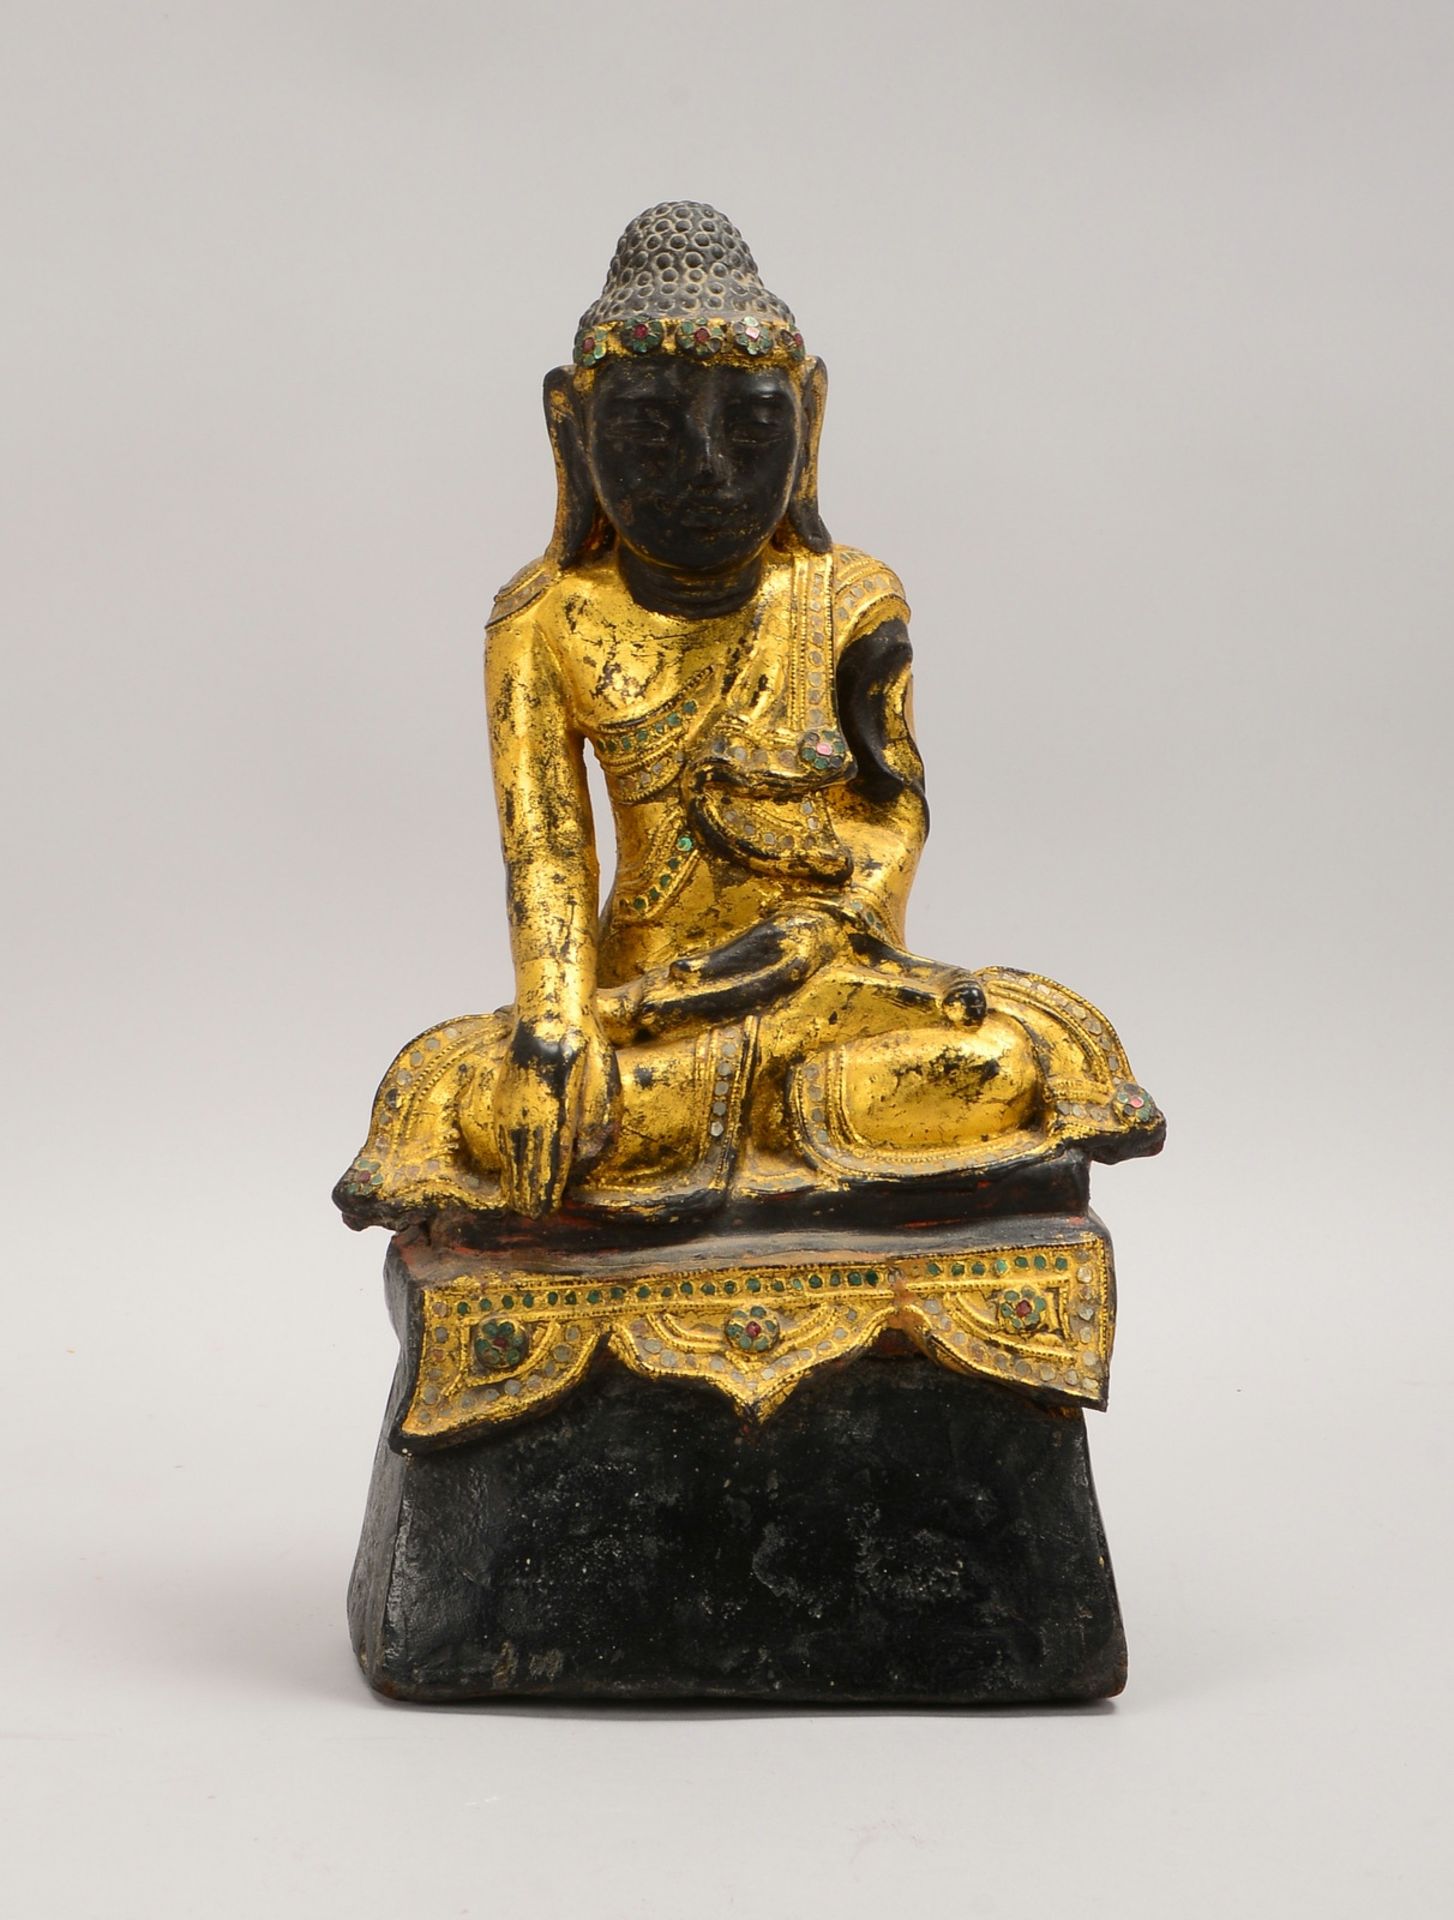 Holzfigur, 'Sitzender Buddha', schwarz und goldgefasst, Glasbesatz; Höhe 35 cm